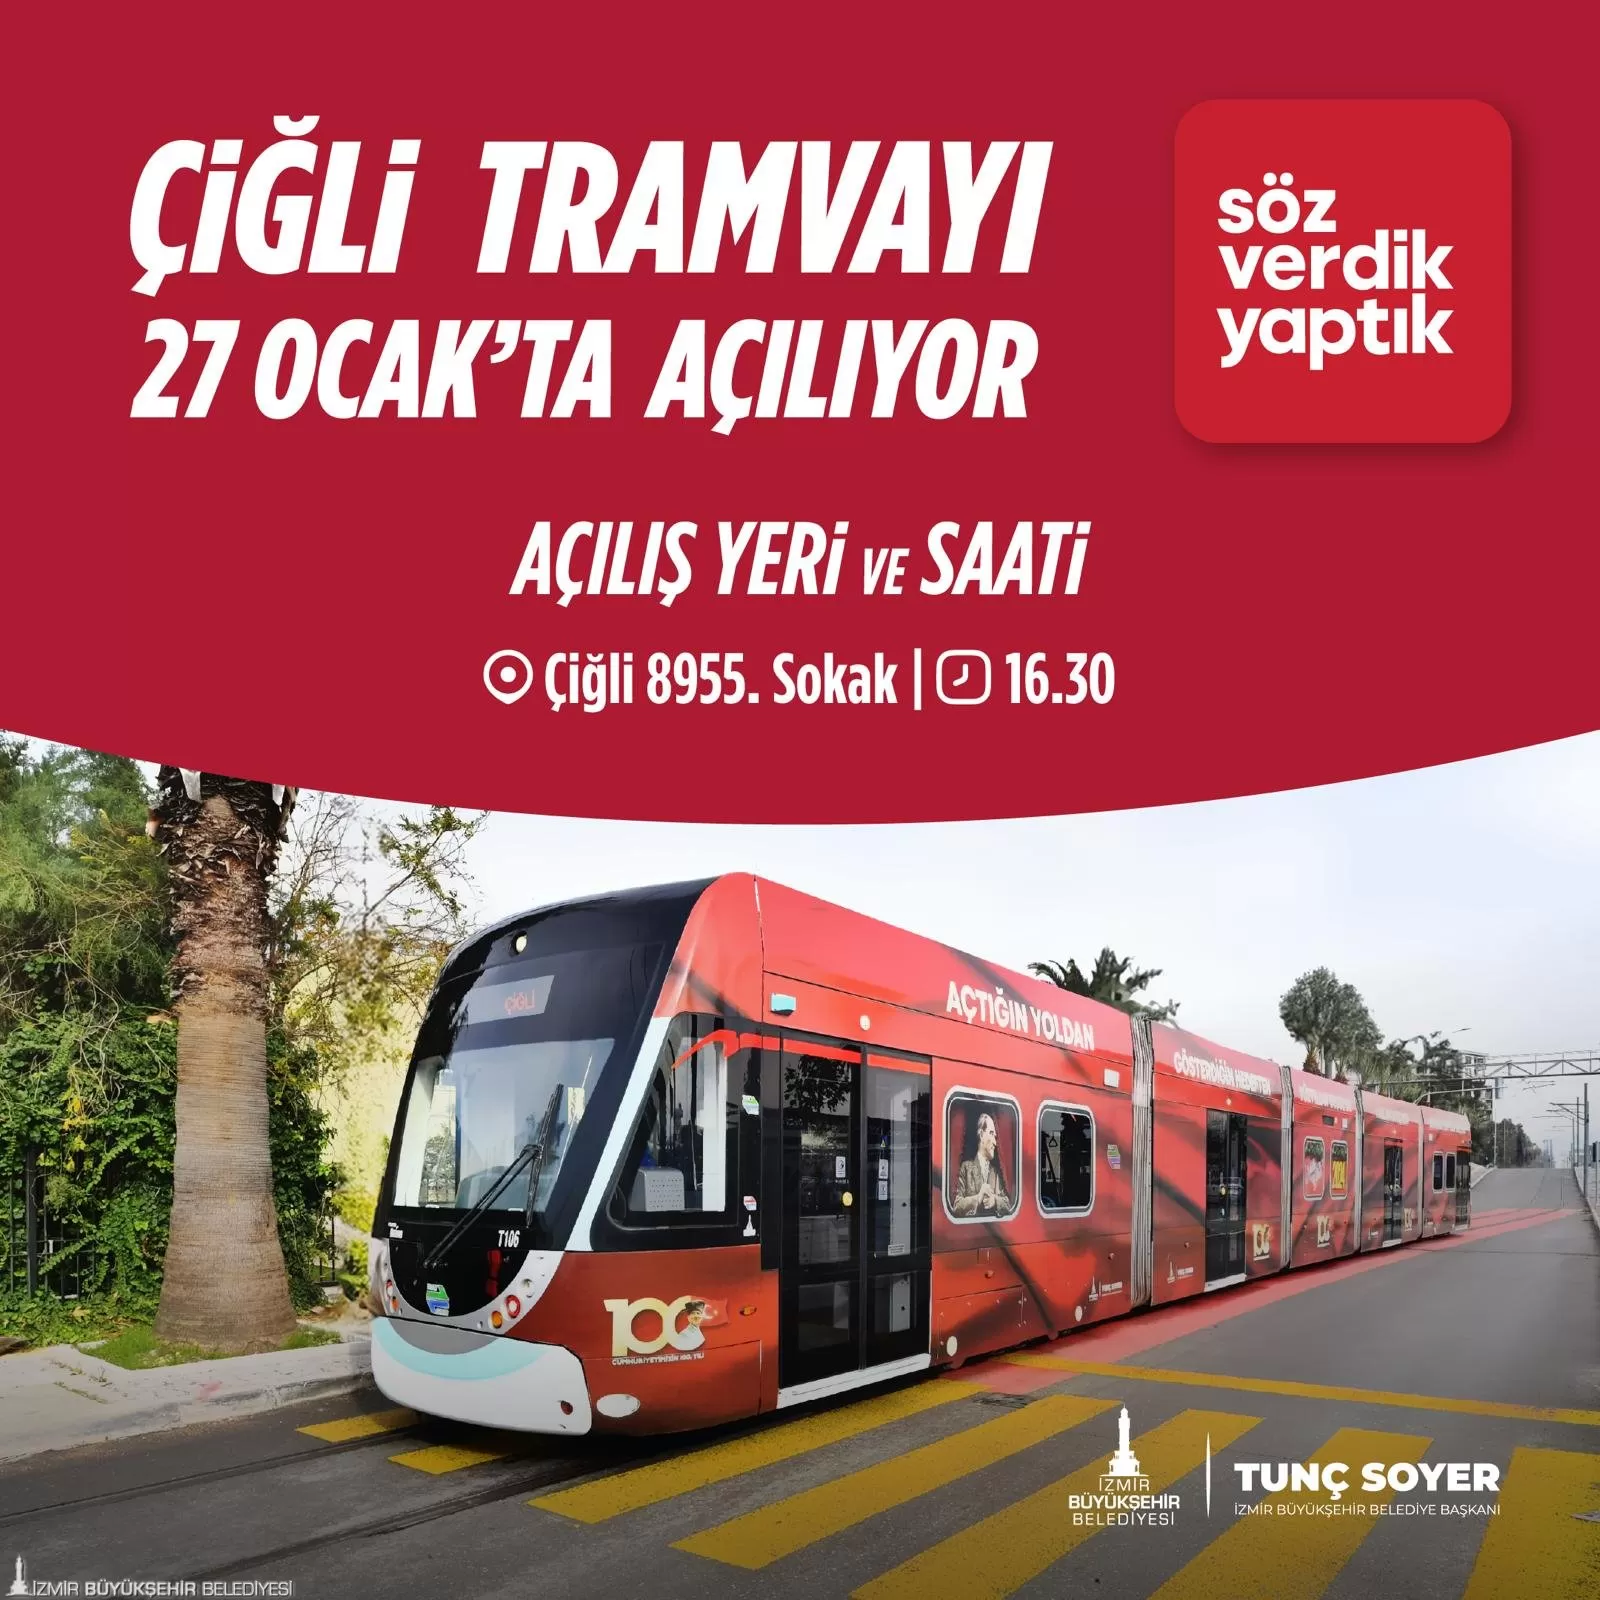 İzmir Büyükşehir Belediyesi tarafından yapımı tamamlanan Çiğli Tramvayı, bugün saat 16.30'da Çiğli 8955 Sokak üzerinde düzenlenecek törenle hizmete girecek.